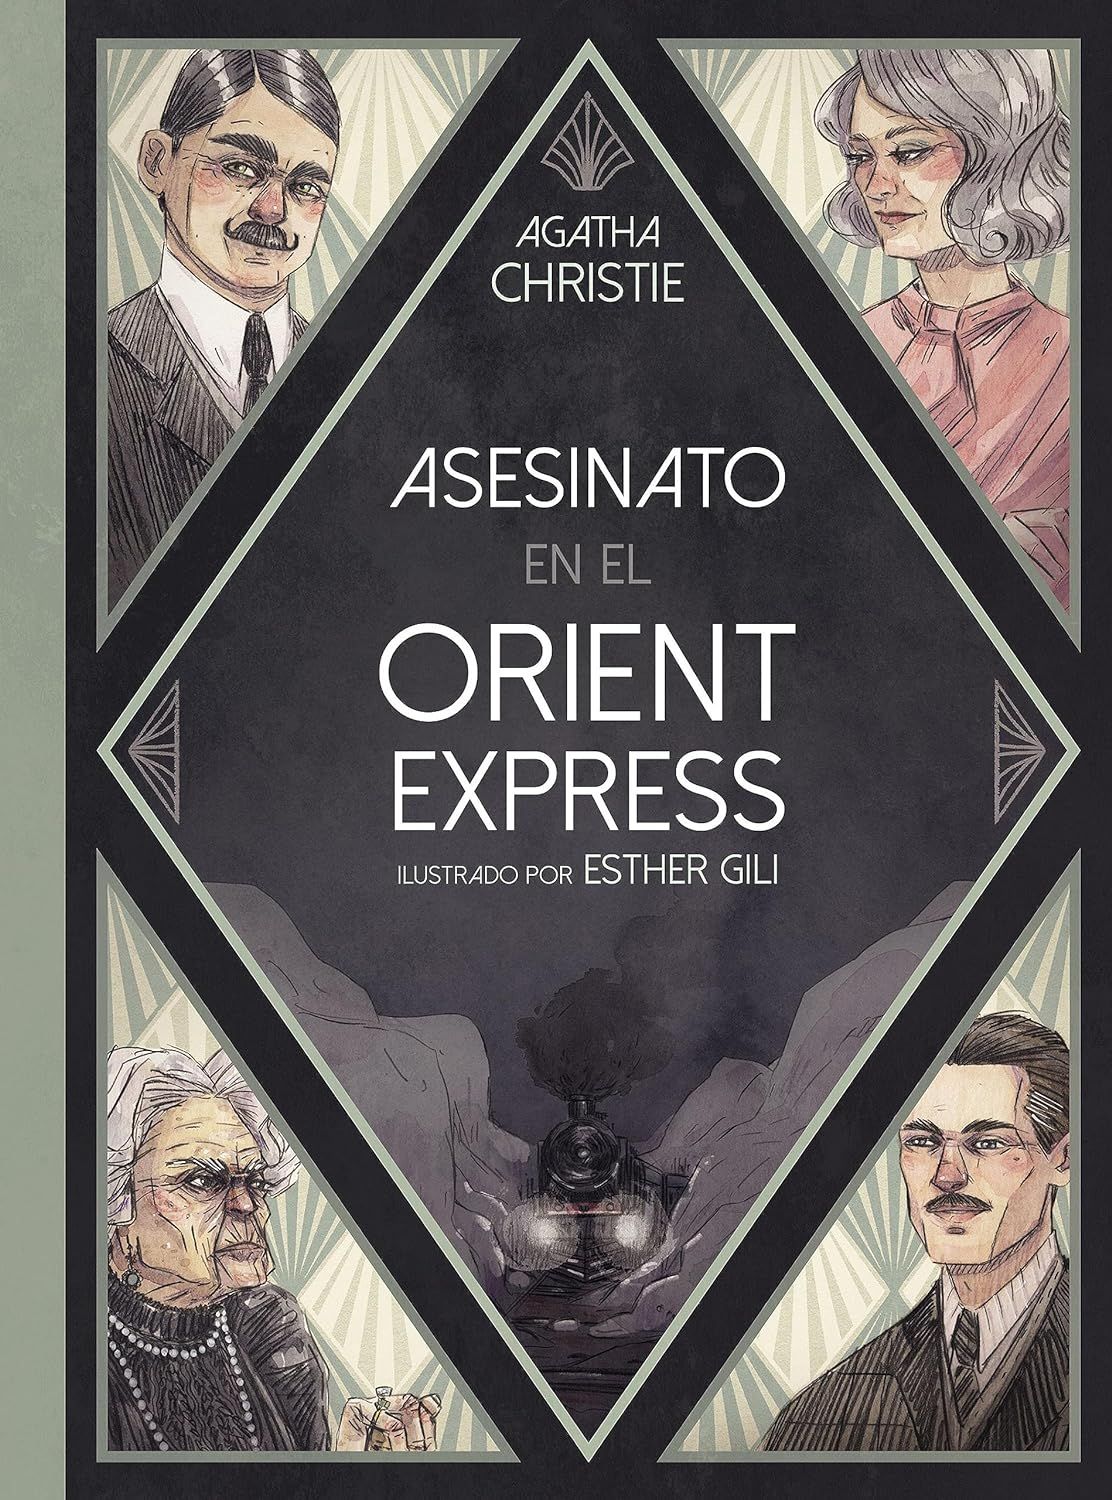 'Asesinato en el Orient Express' ilustrado por Esther Gili (Lunwerg Editores)